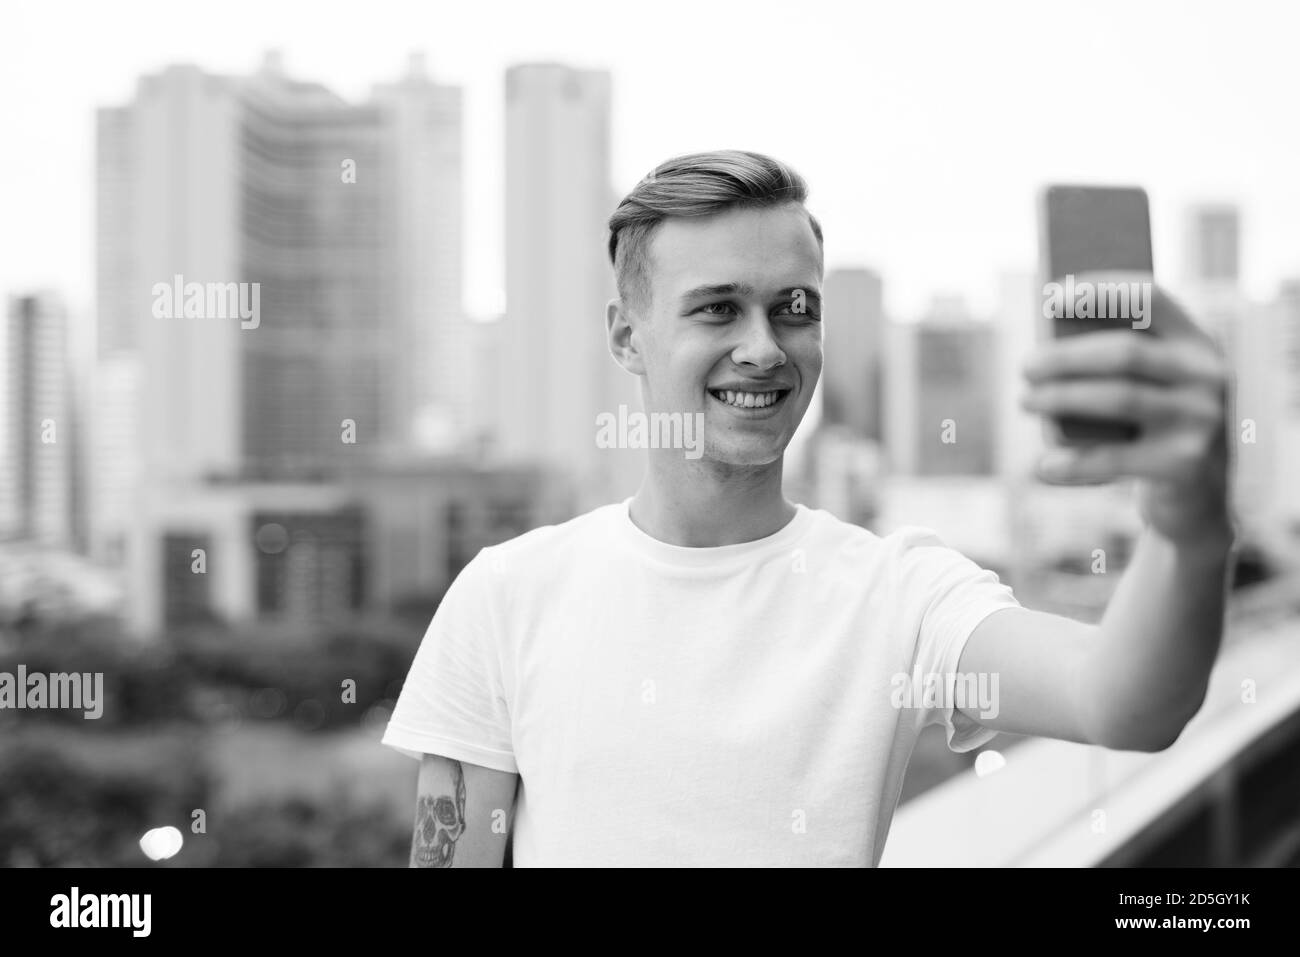 Junger stattlicher Mann mit blonden Haaren gegen den Blick auf die Stadt Stockfoto